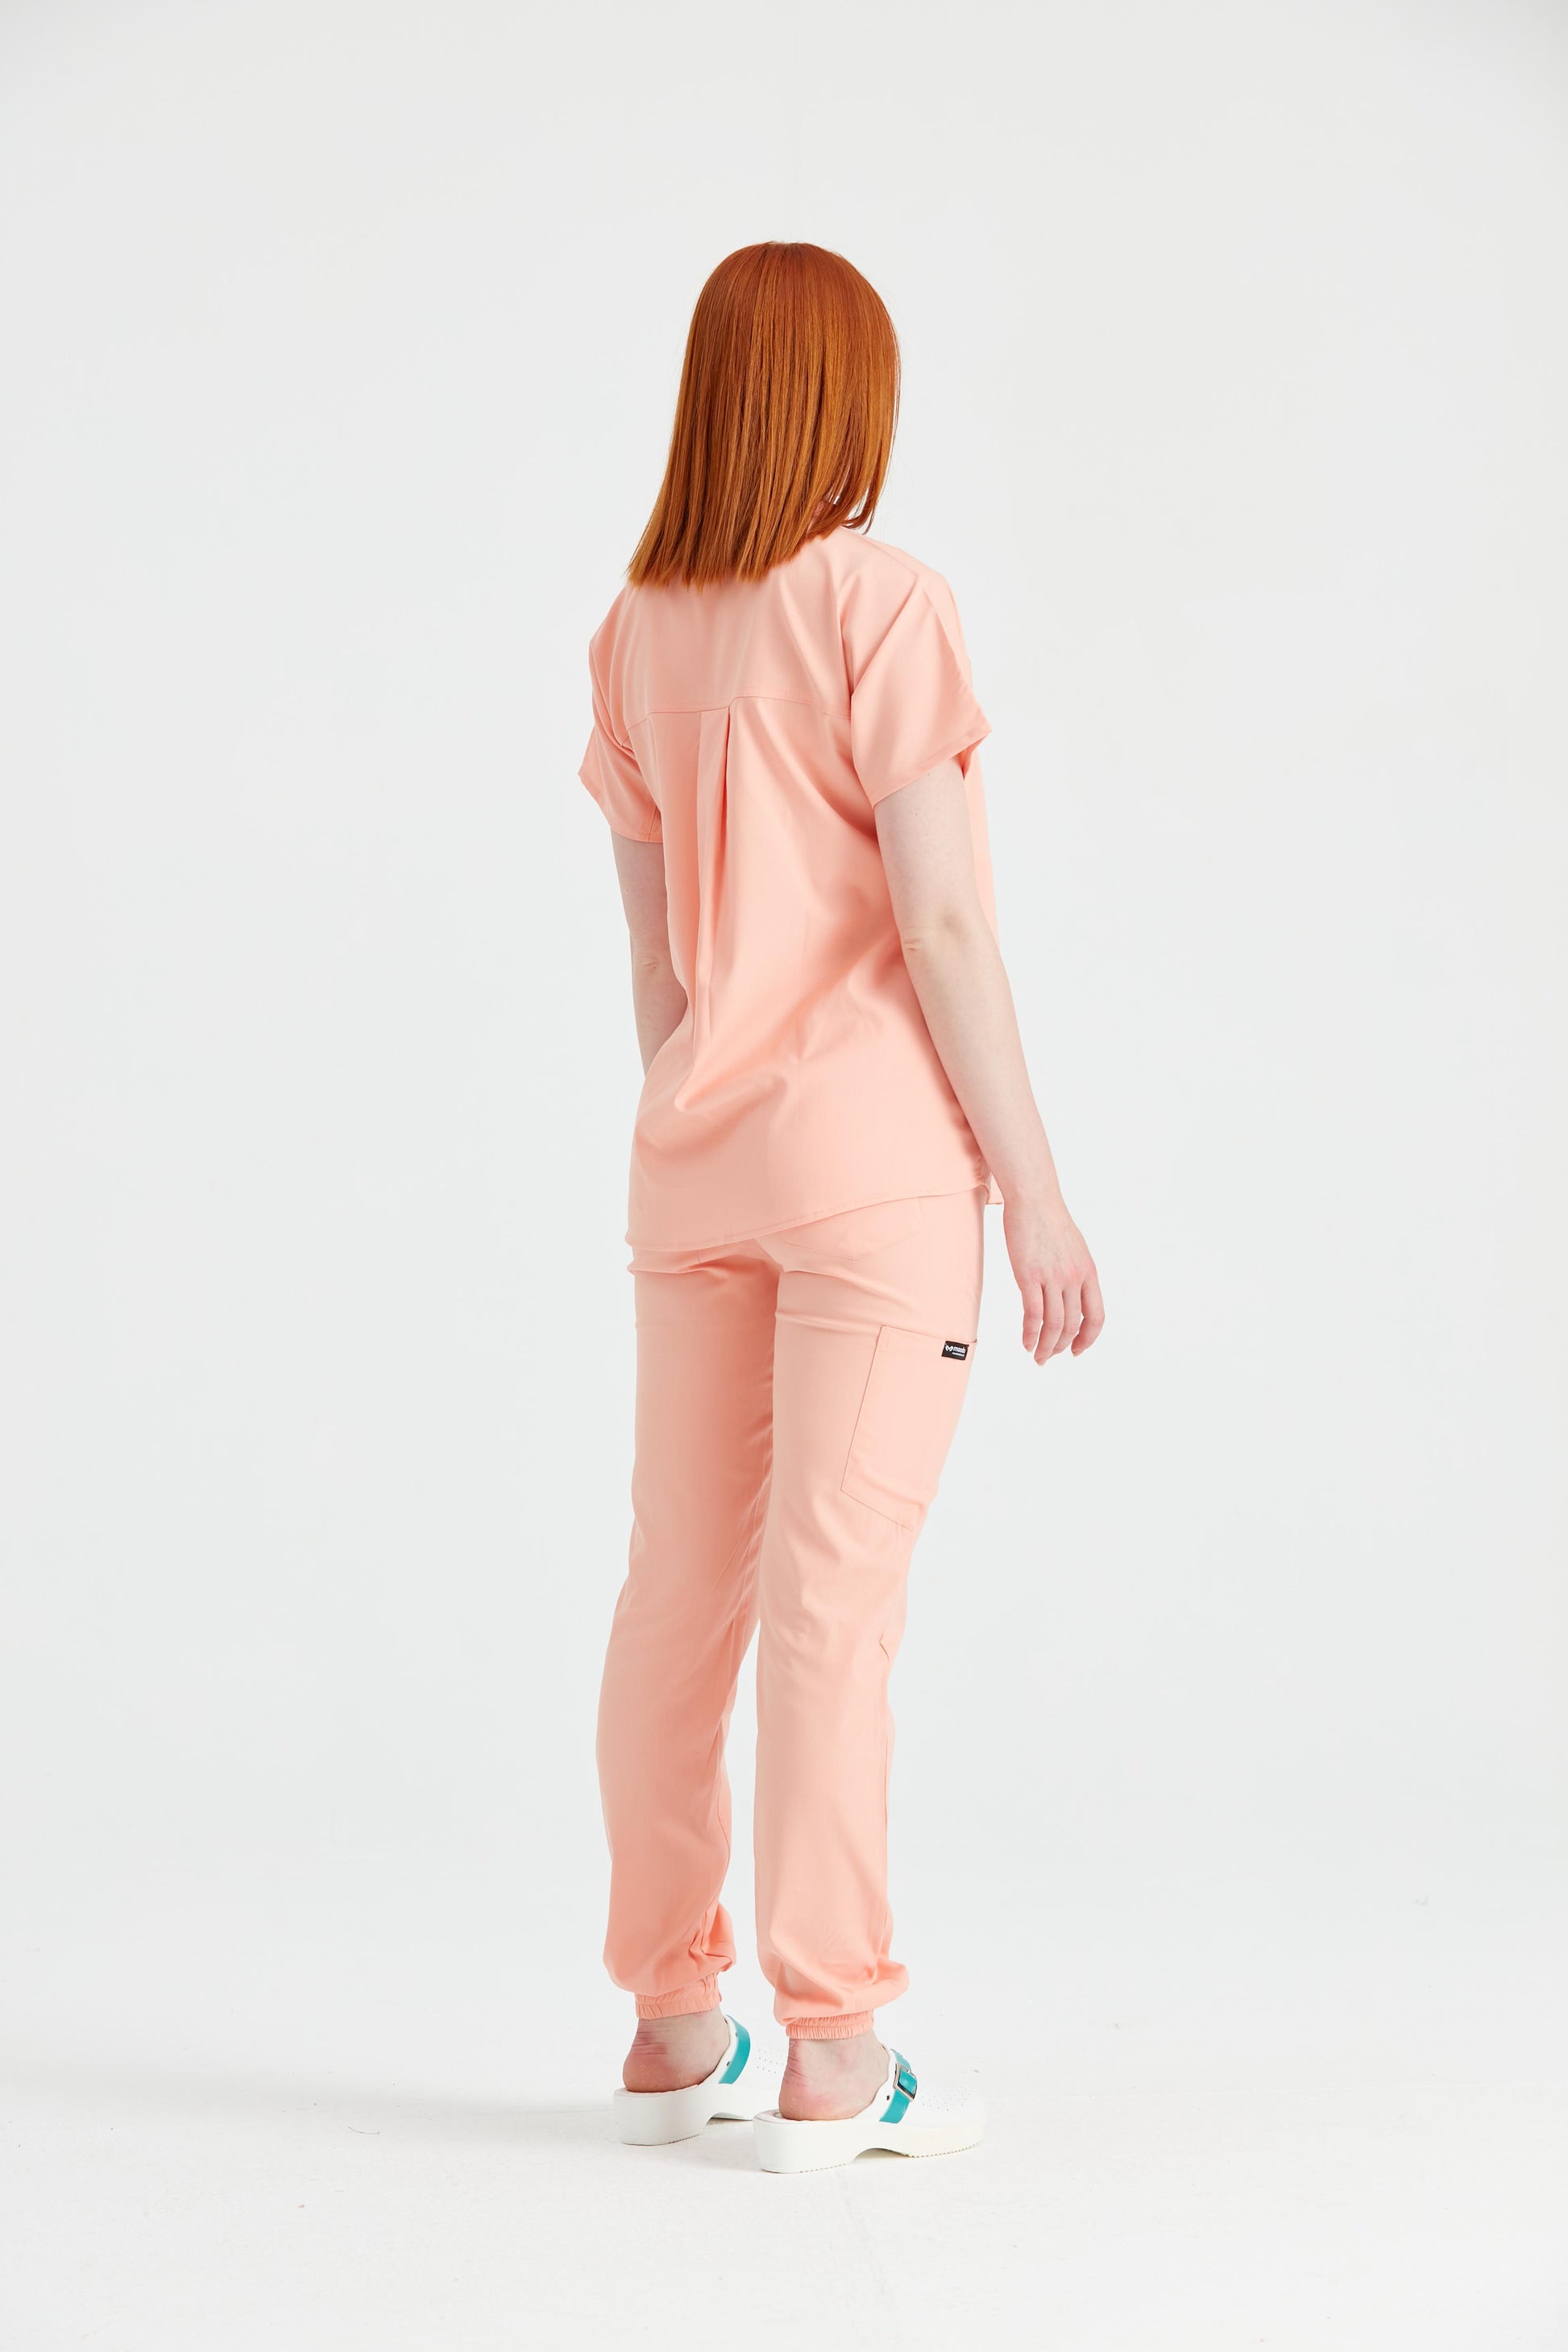 Asistenta medicala imbracata in costum medical de dama portocaliu, vedere din spate